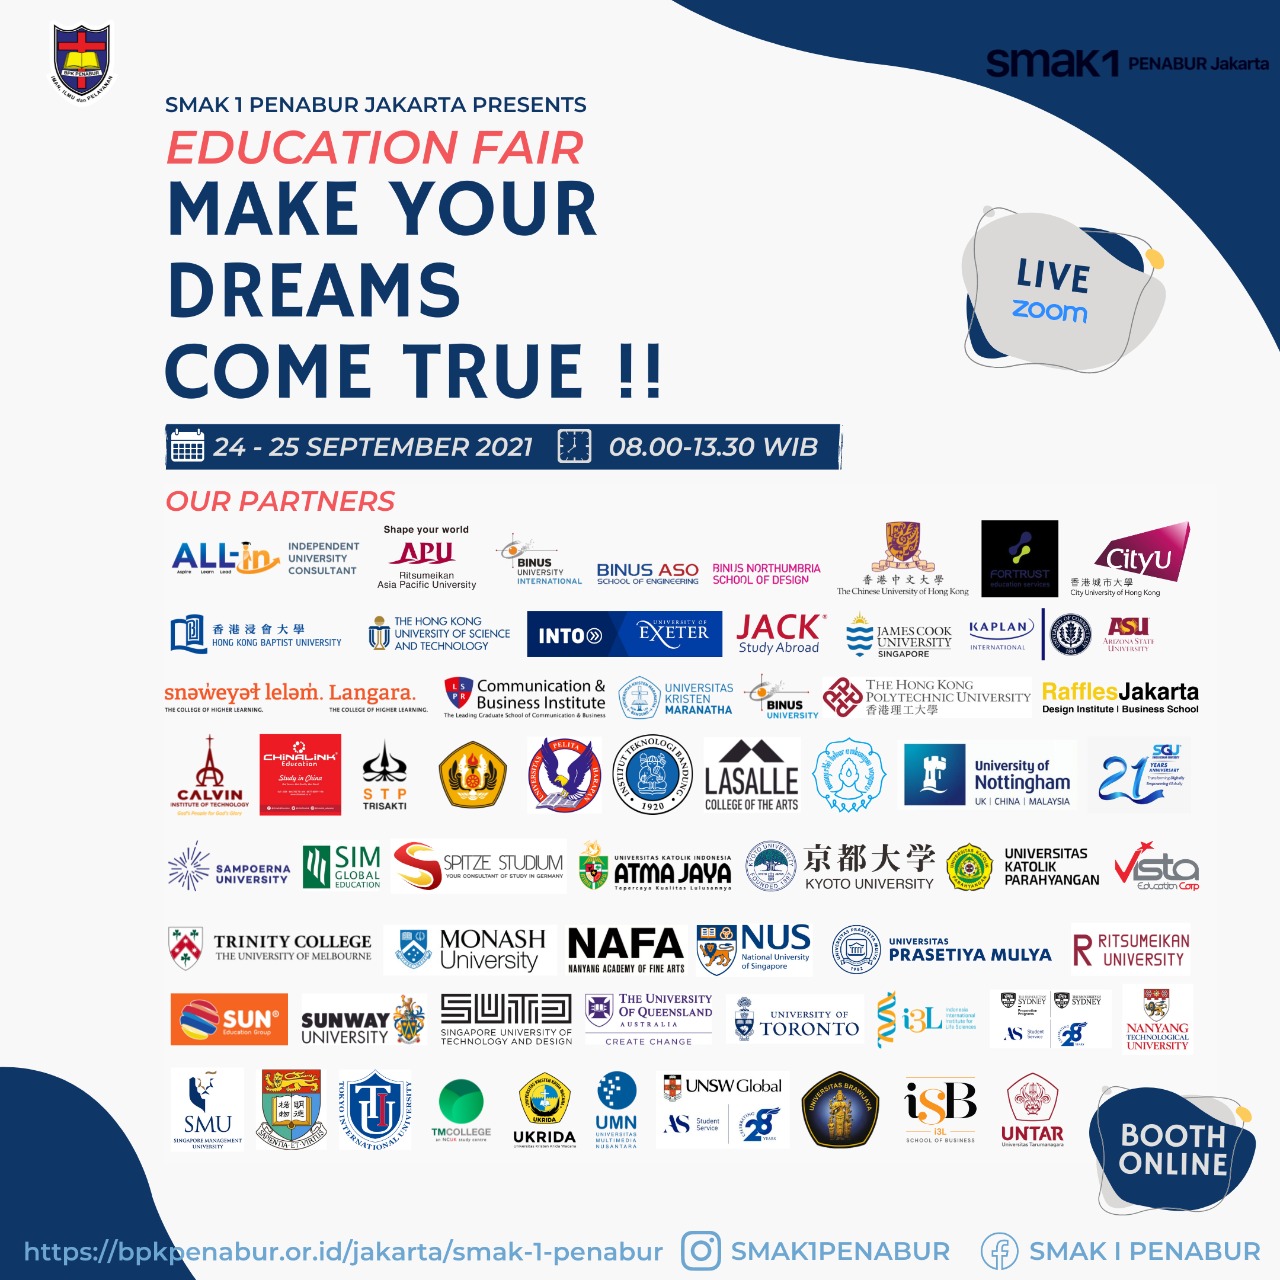 SMA KRISTEN 1 PENABUR JAKARTA - GUIDE TO CAMPUS 2021 "Make your dreams come true"